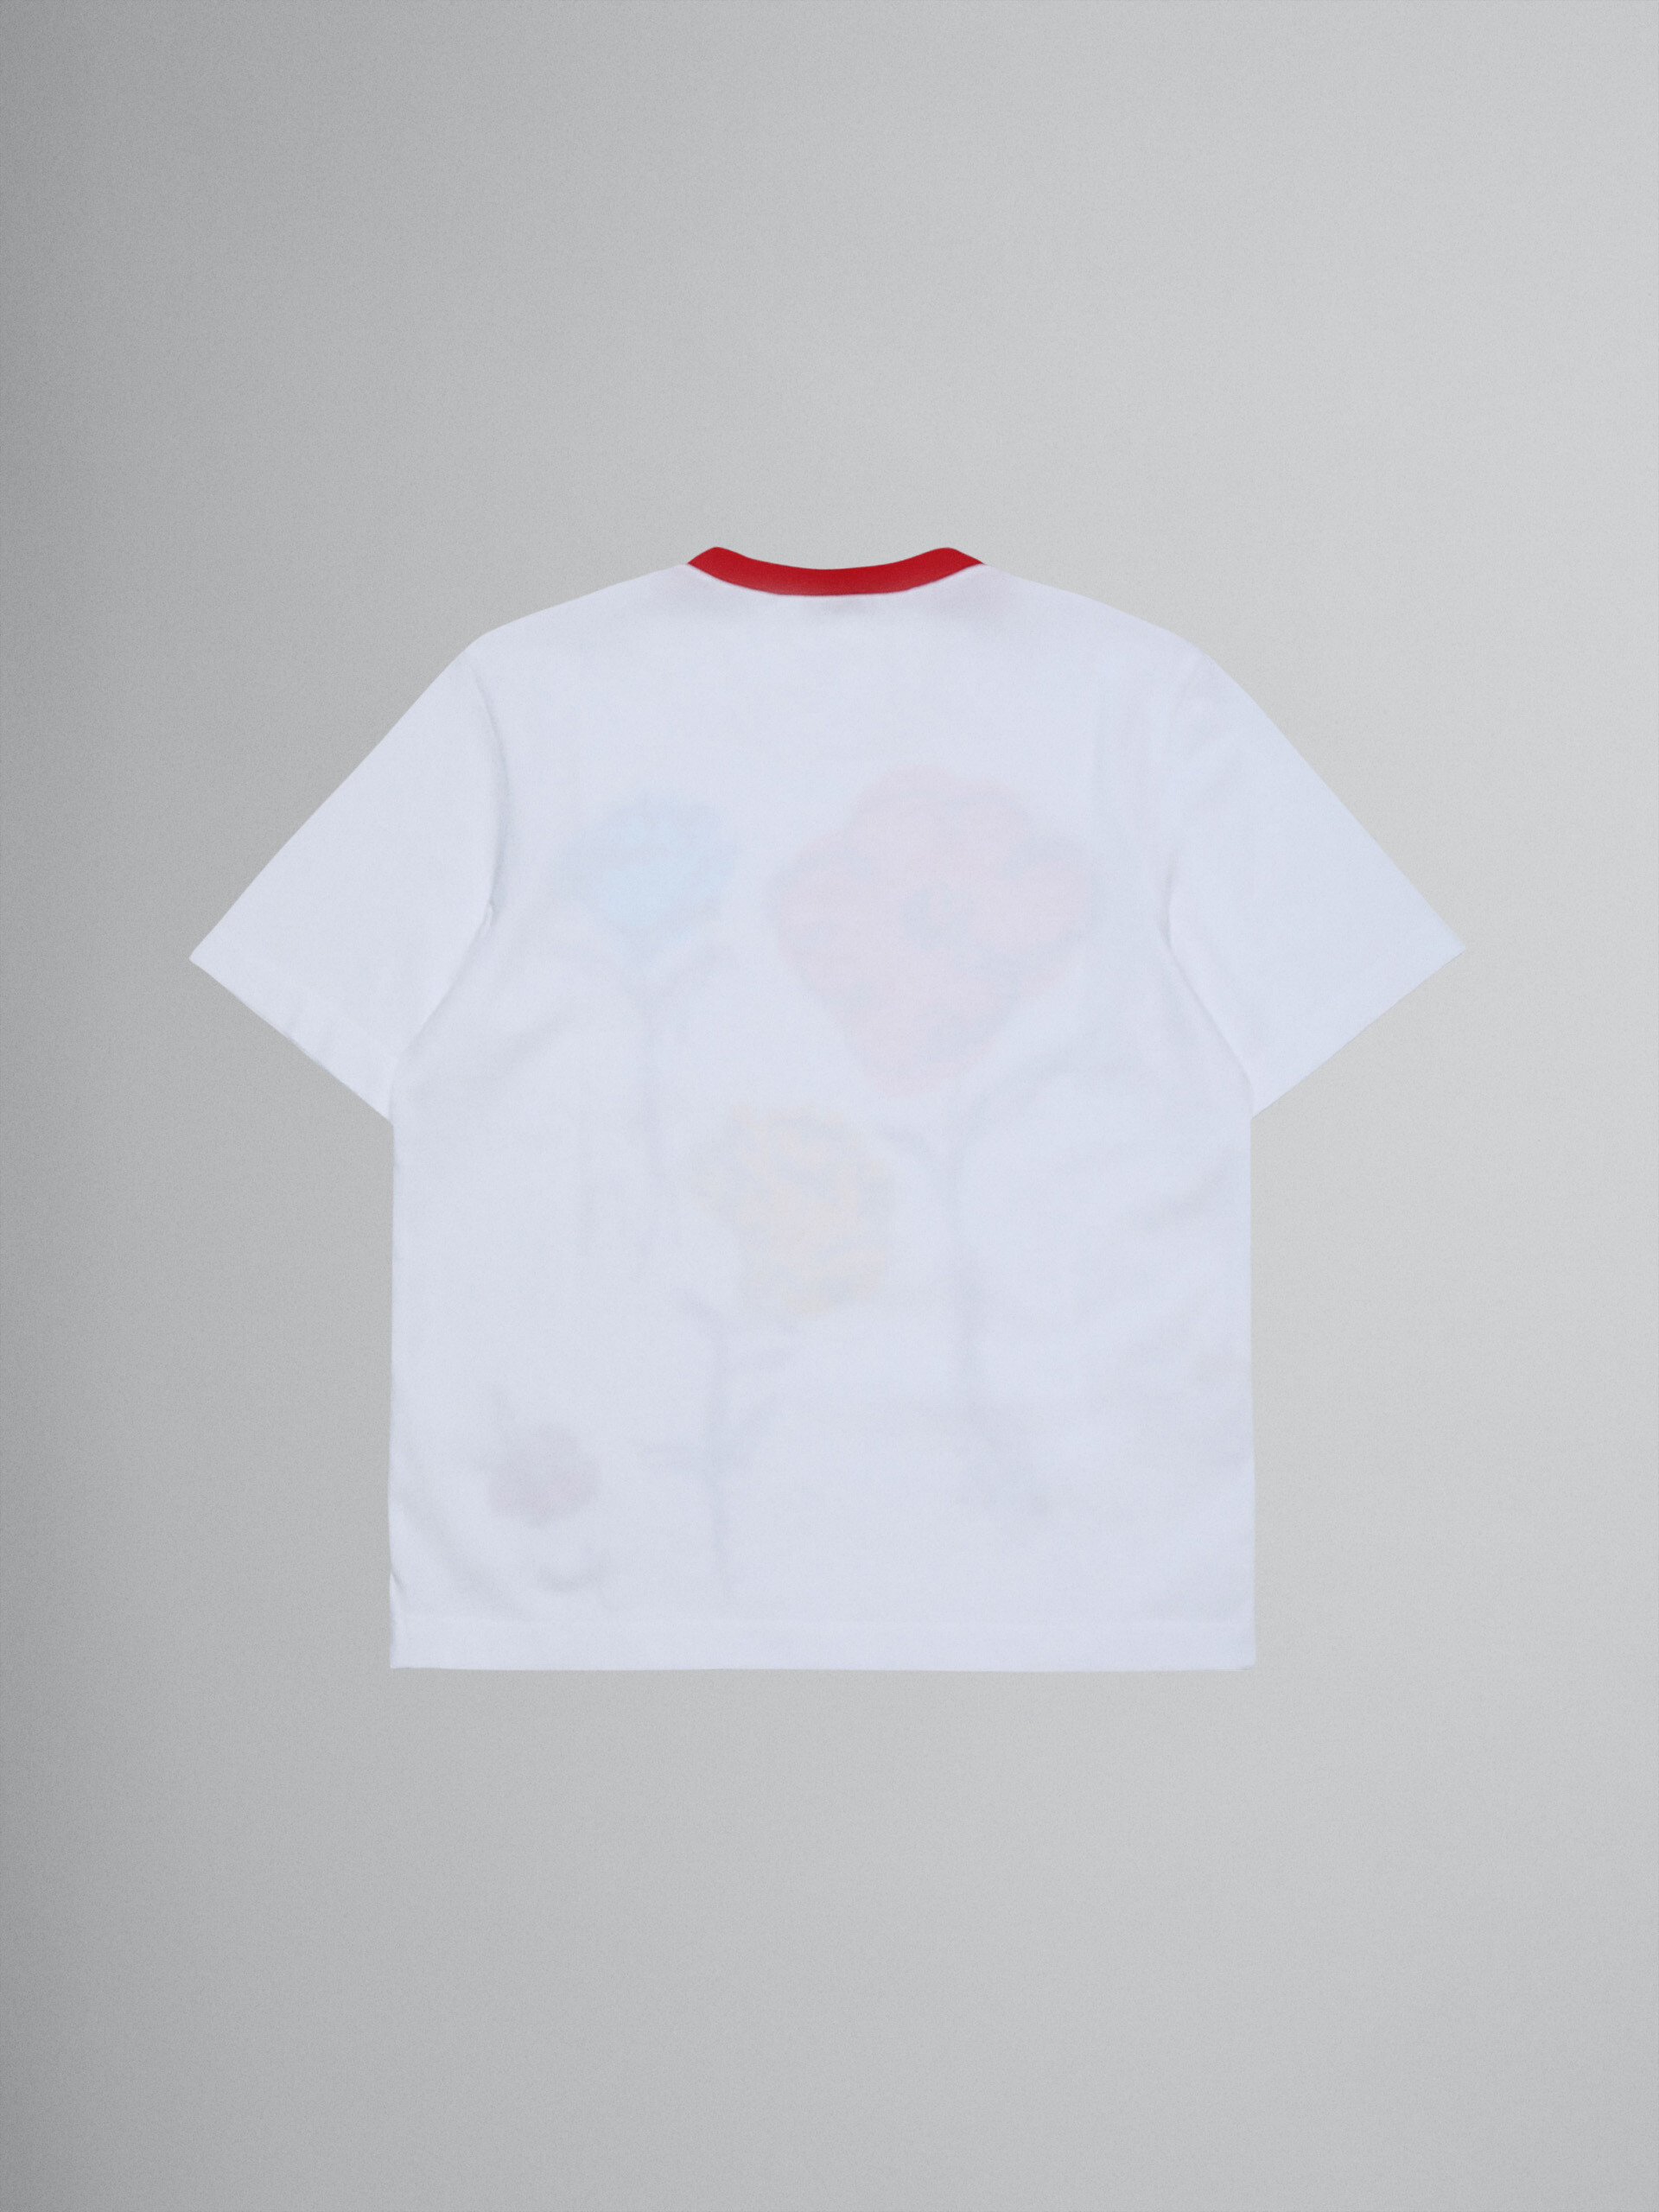 코튼 저지 플라워 티셔츠 - T-shirts - Image 2